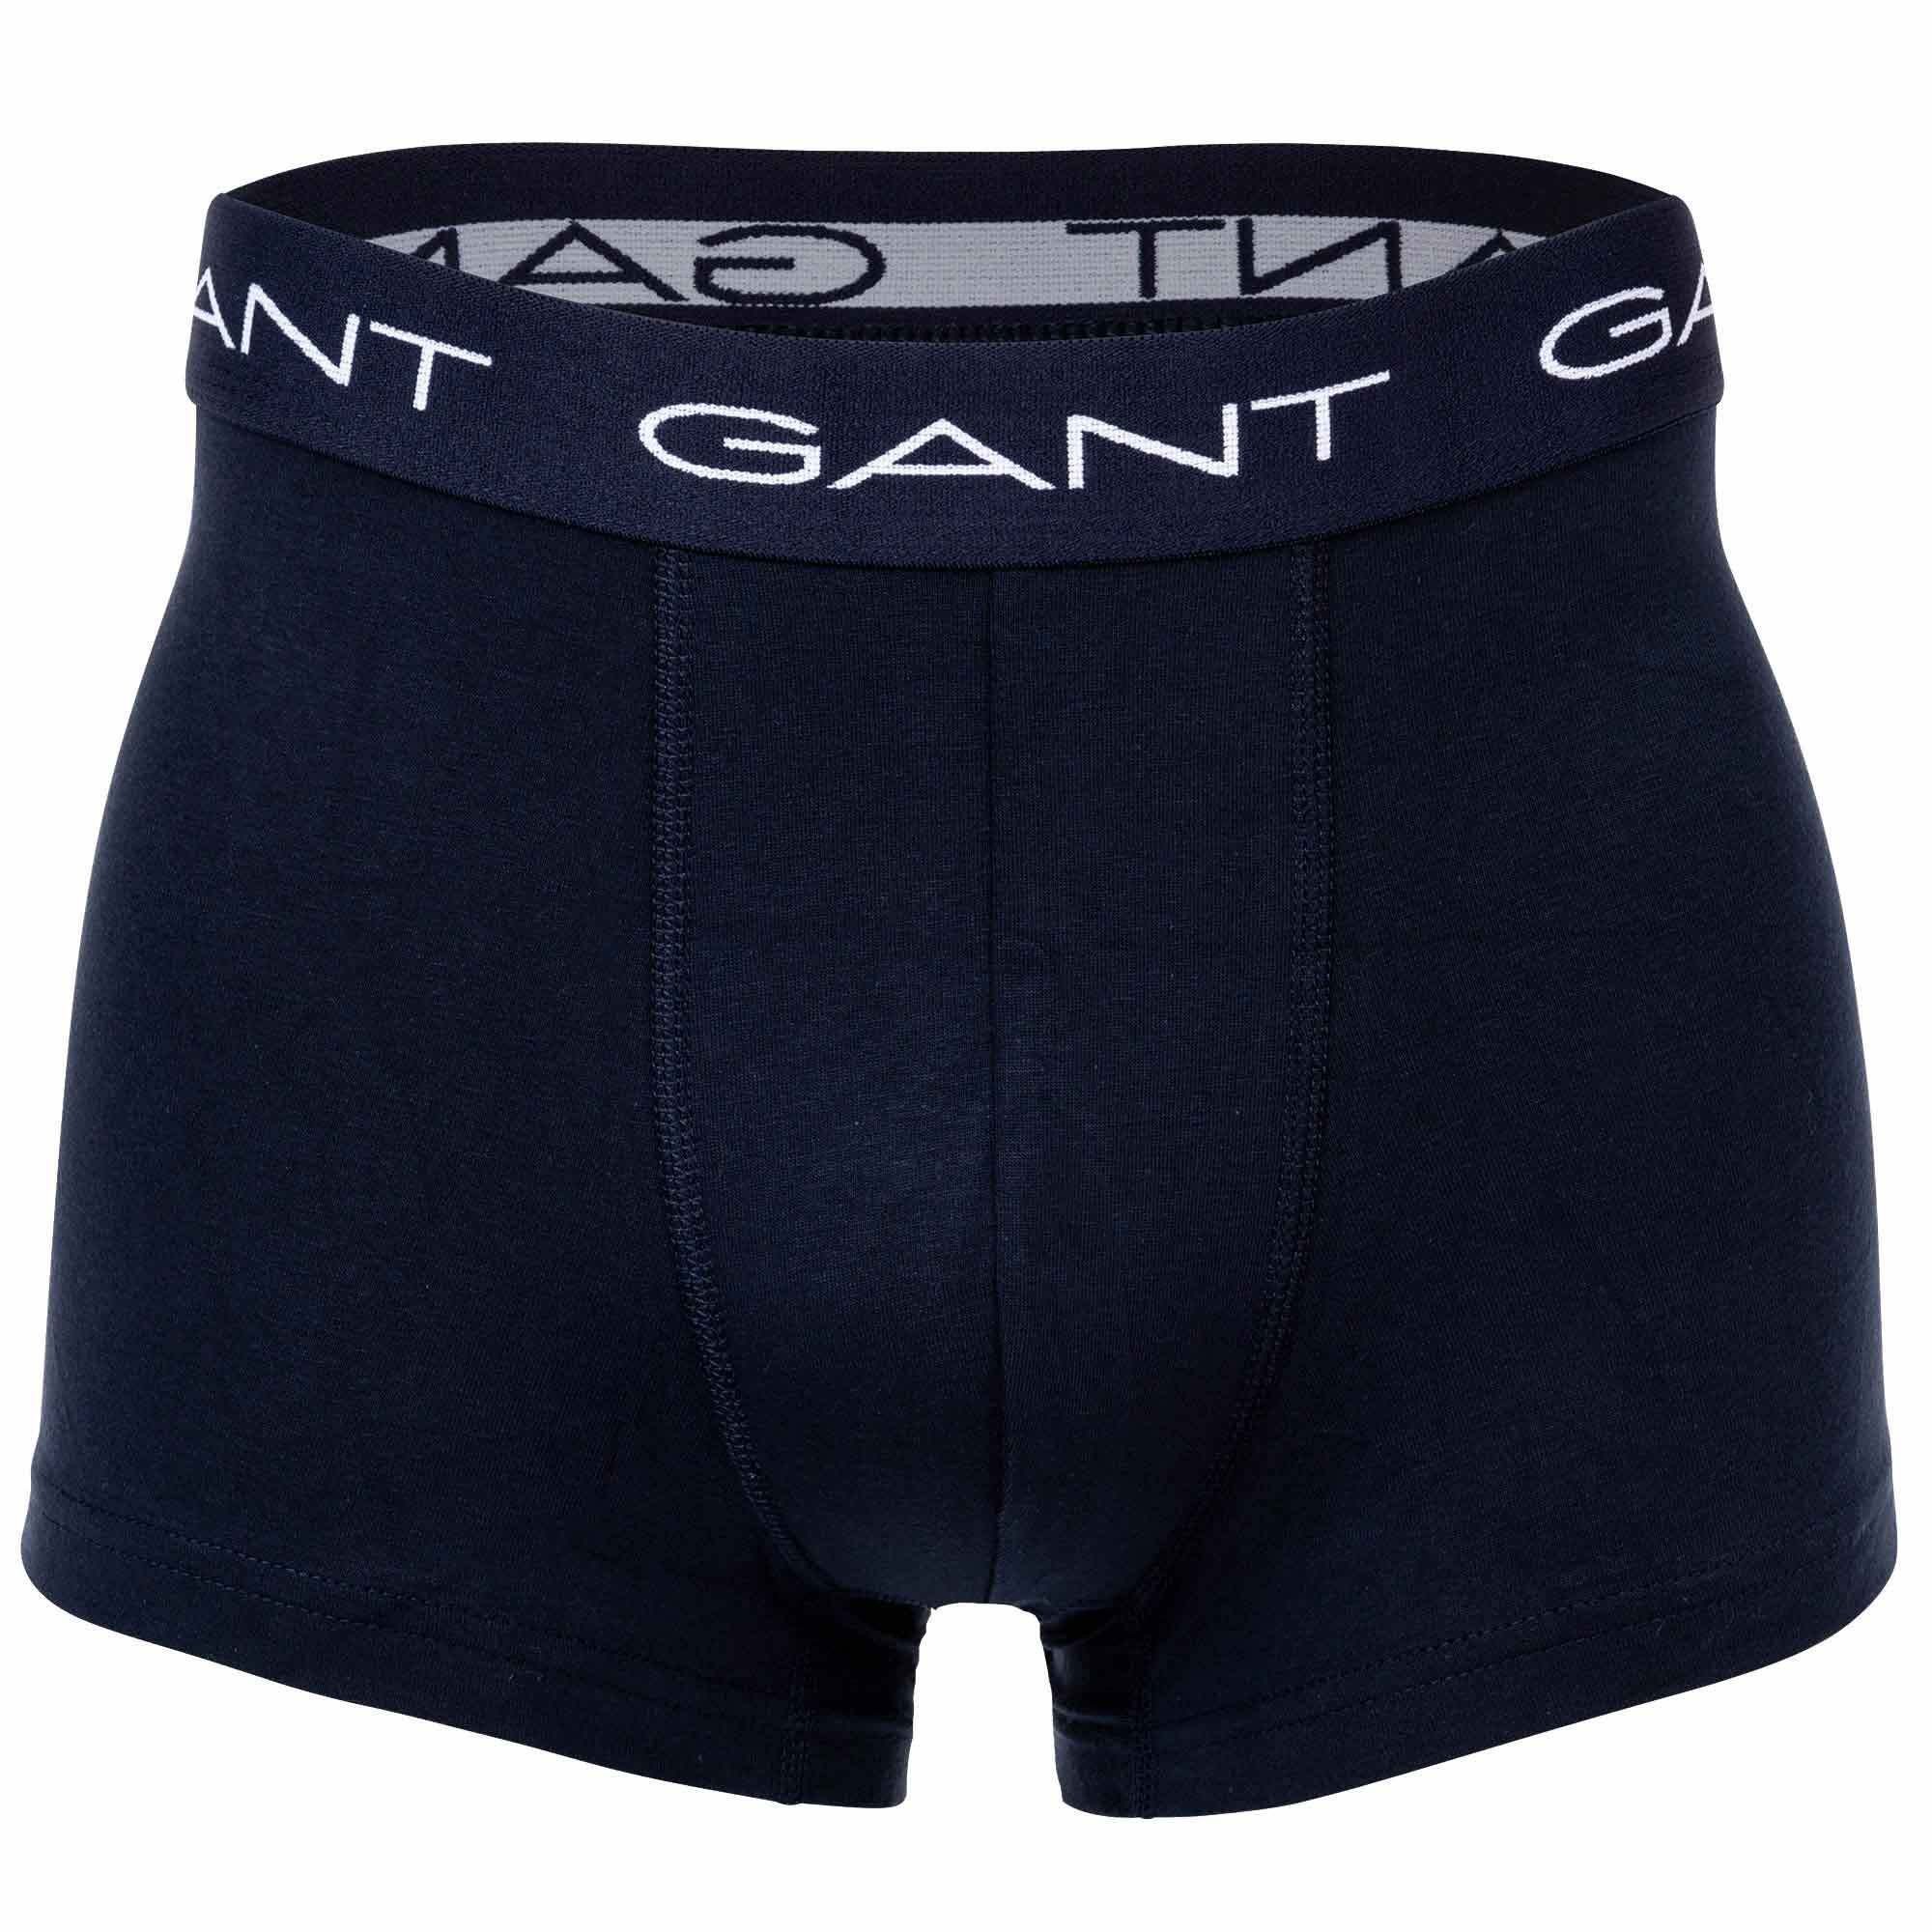 Gant Boxer Herren Trunks Shorts, 3er Pack Rot Stripe - Boxer